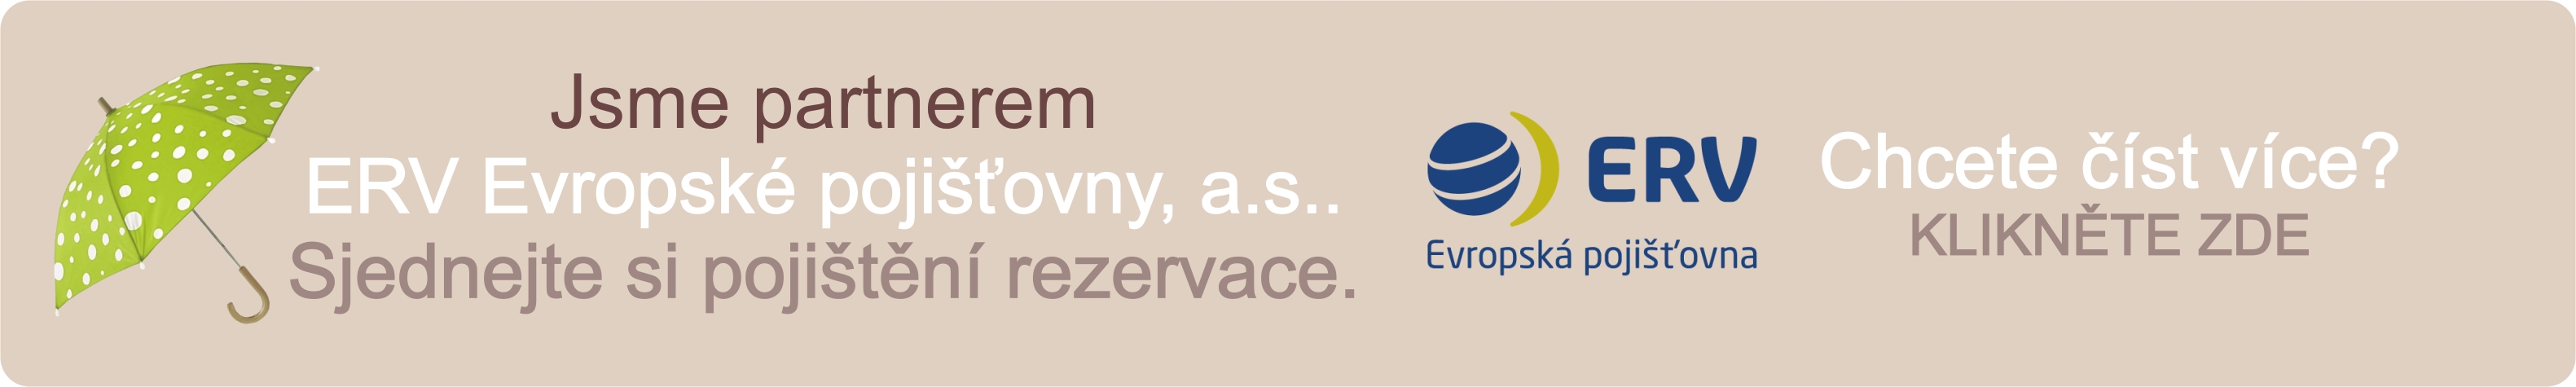 Stali jsme se partnerem ERV Evropské pojišťovny, a.s.